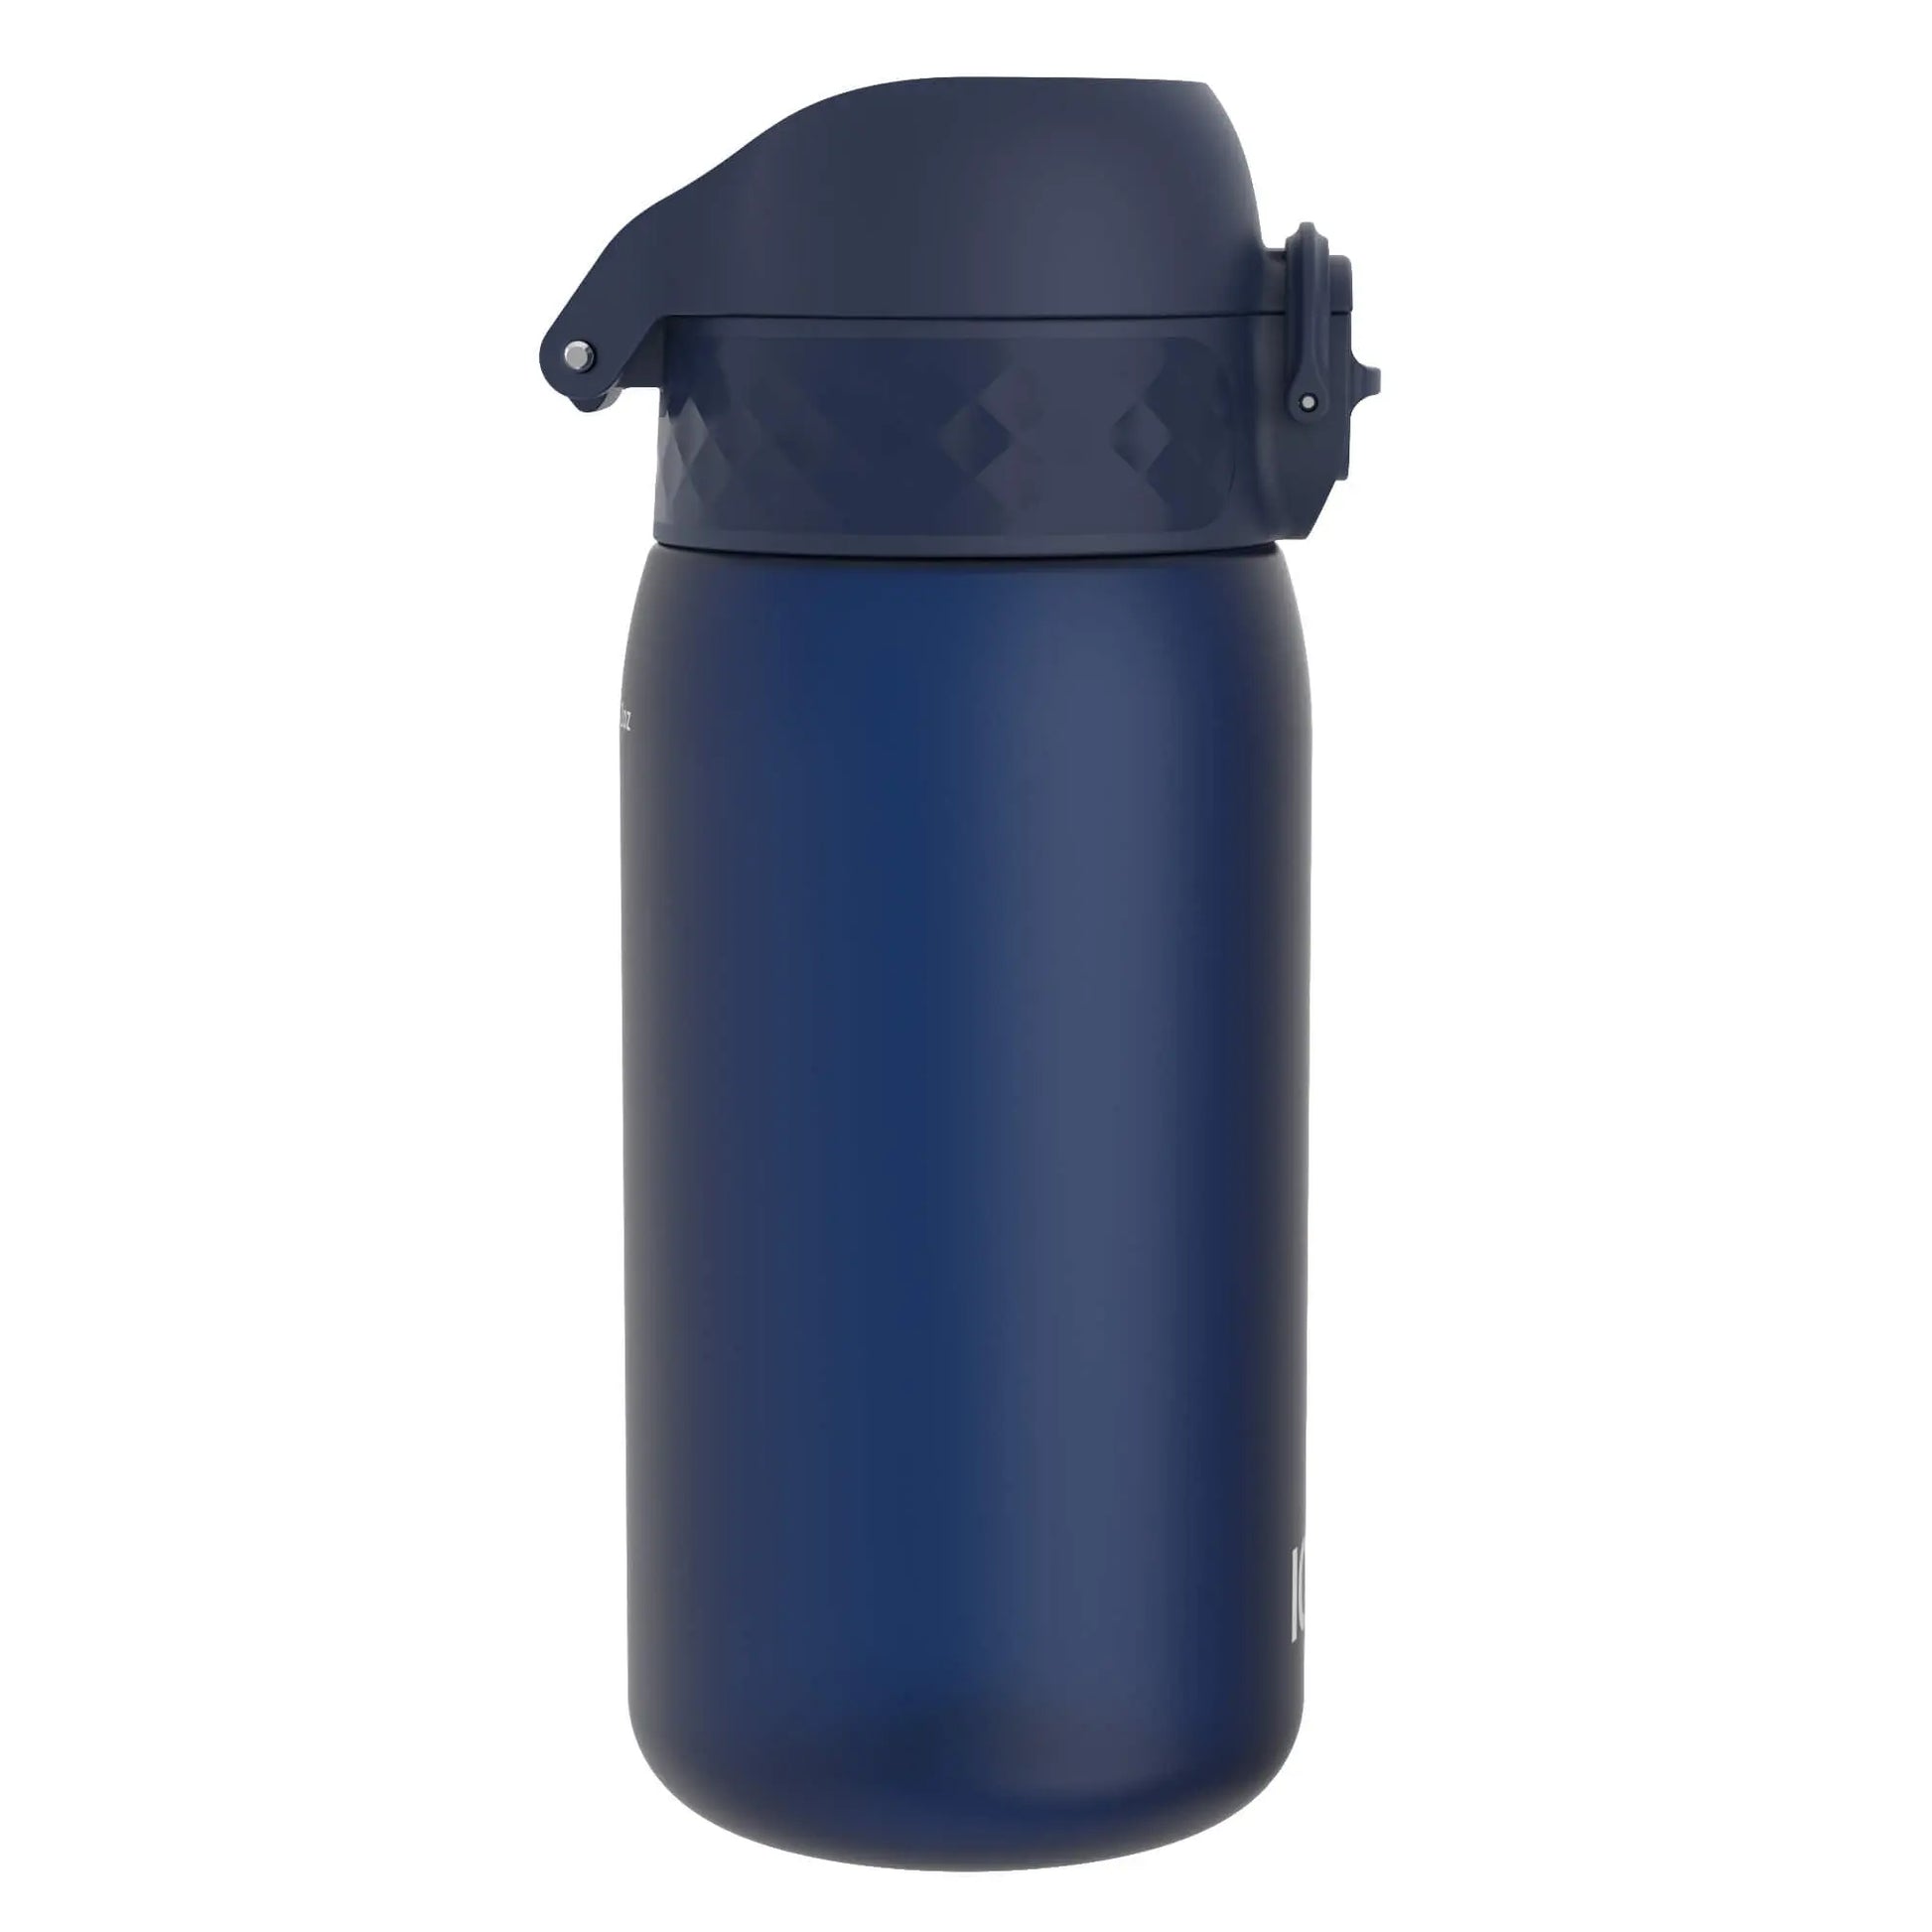 Leak Proof Kids Water Bottle, Recyclon™, Navy, 350ml (12oz) - ION8